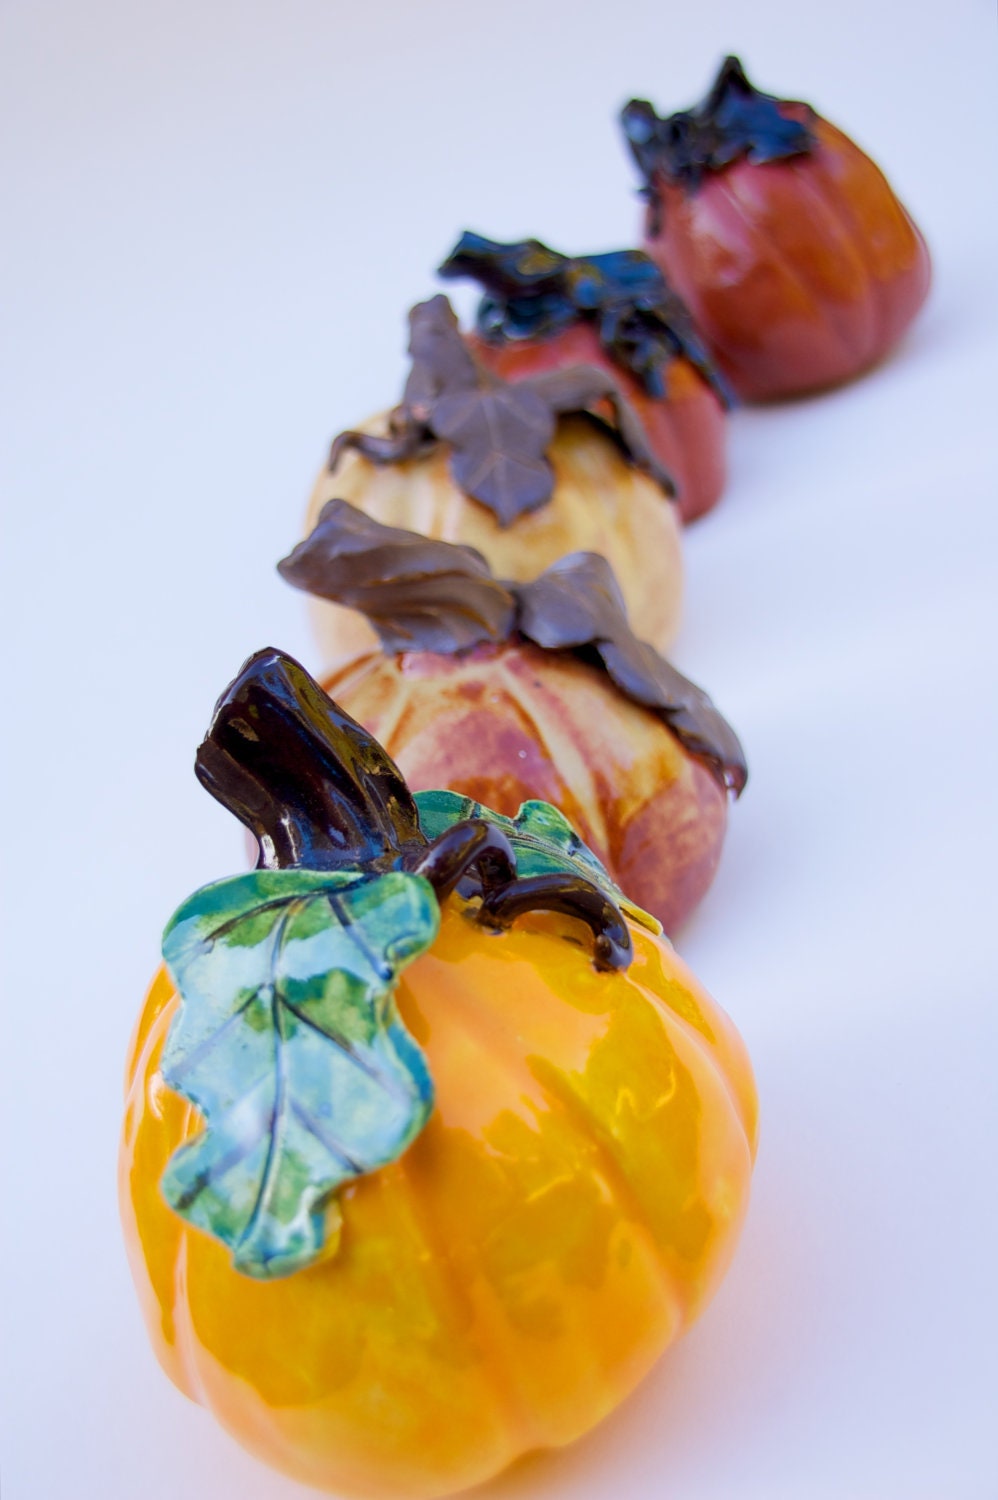 Handmade ceramic harvest pumpkins for fall decor - GR8ART4U